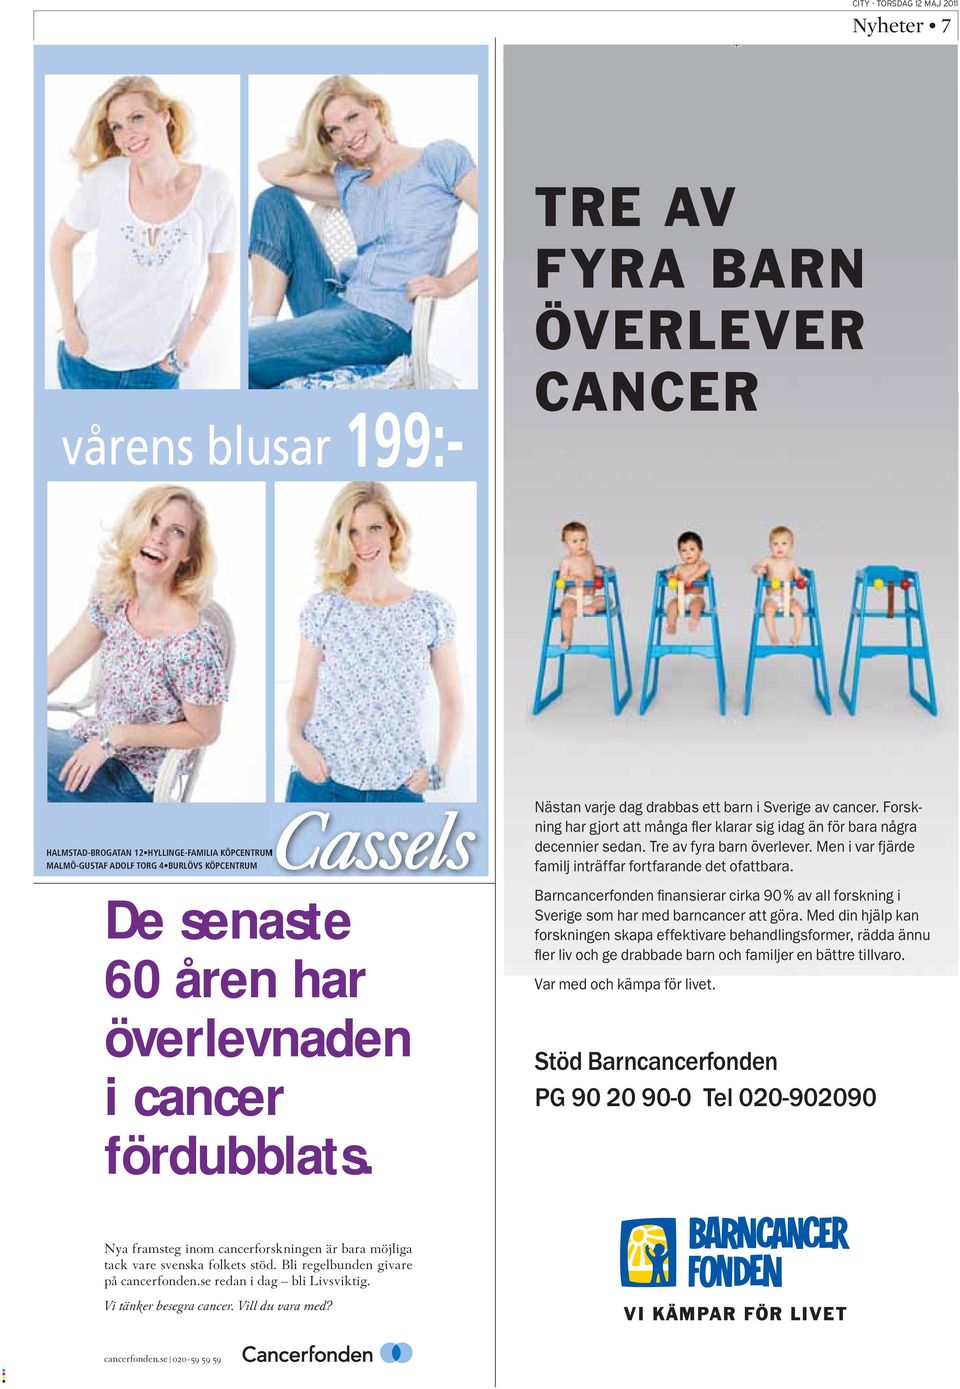 Men i var fjärde familj inträffar fortfarande det ofattbara. Barncancerfonden finansierar cirka 90 % av all forskning i Sverige som har med barncancer att göra.